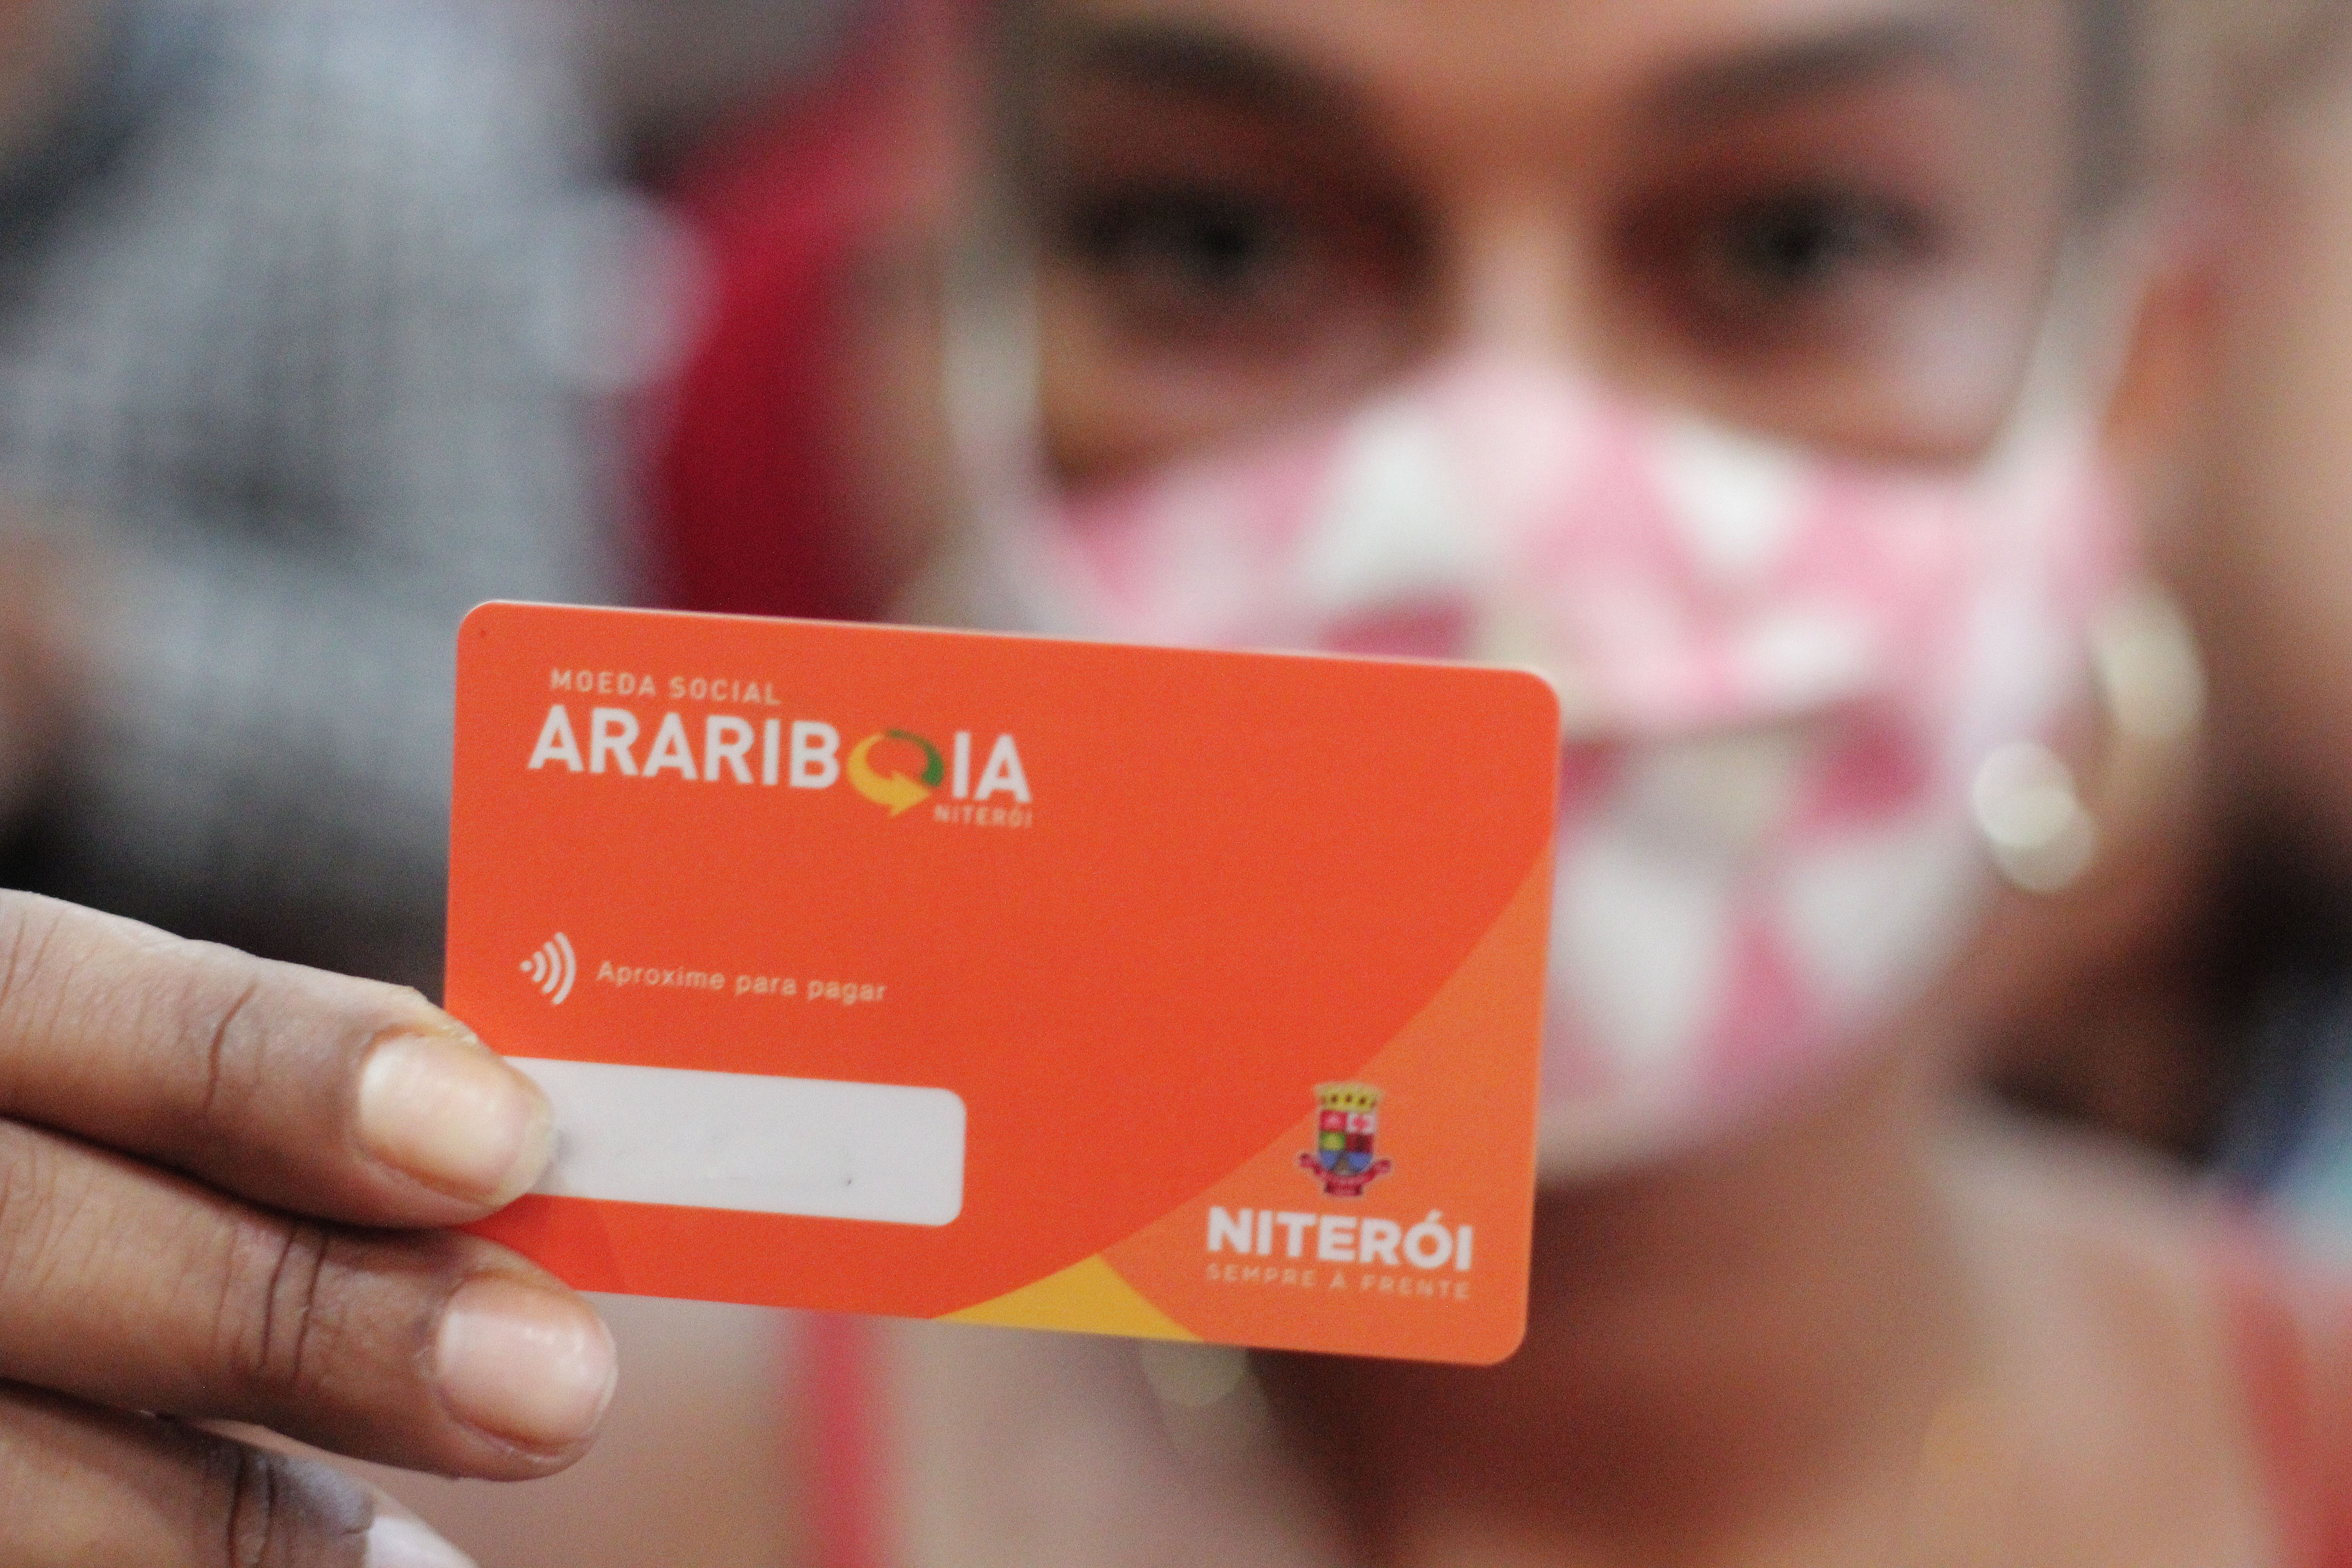 Moeda Social Arariboia já fez circular mais de R$ 2,5 milhões em Niterói